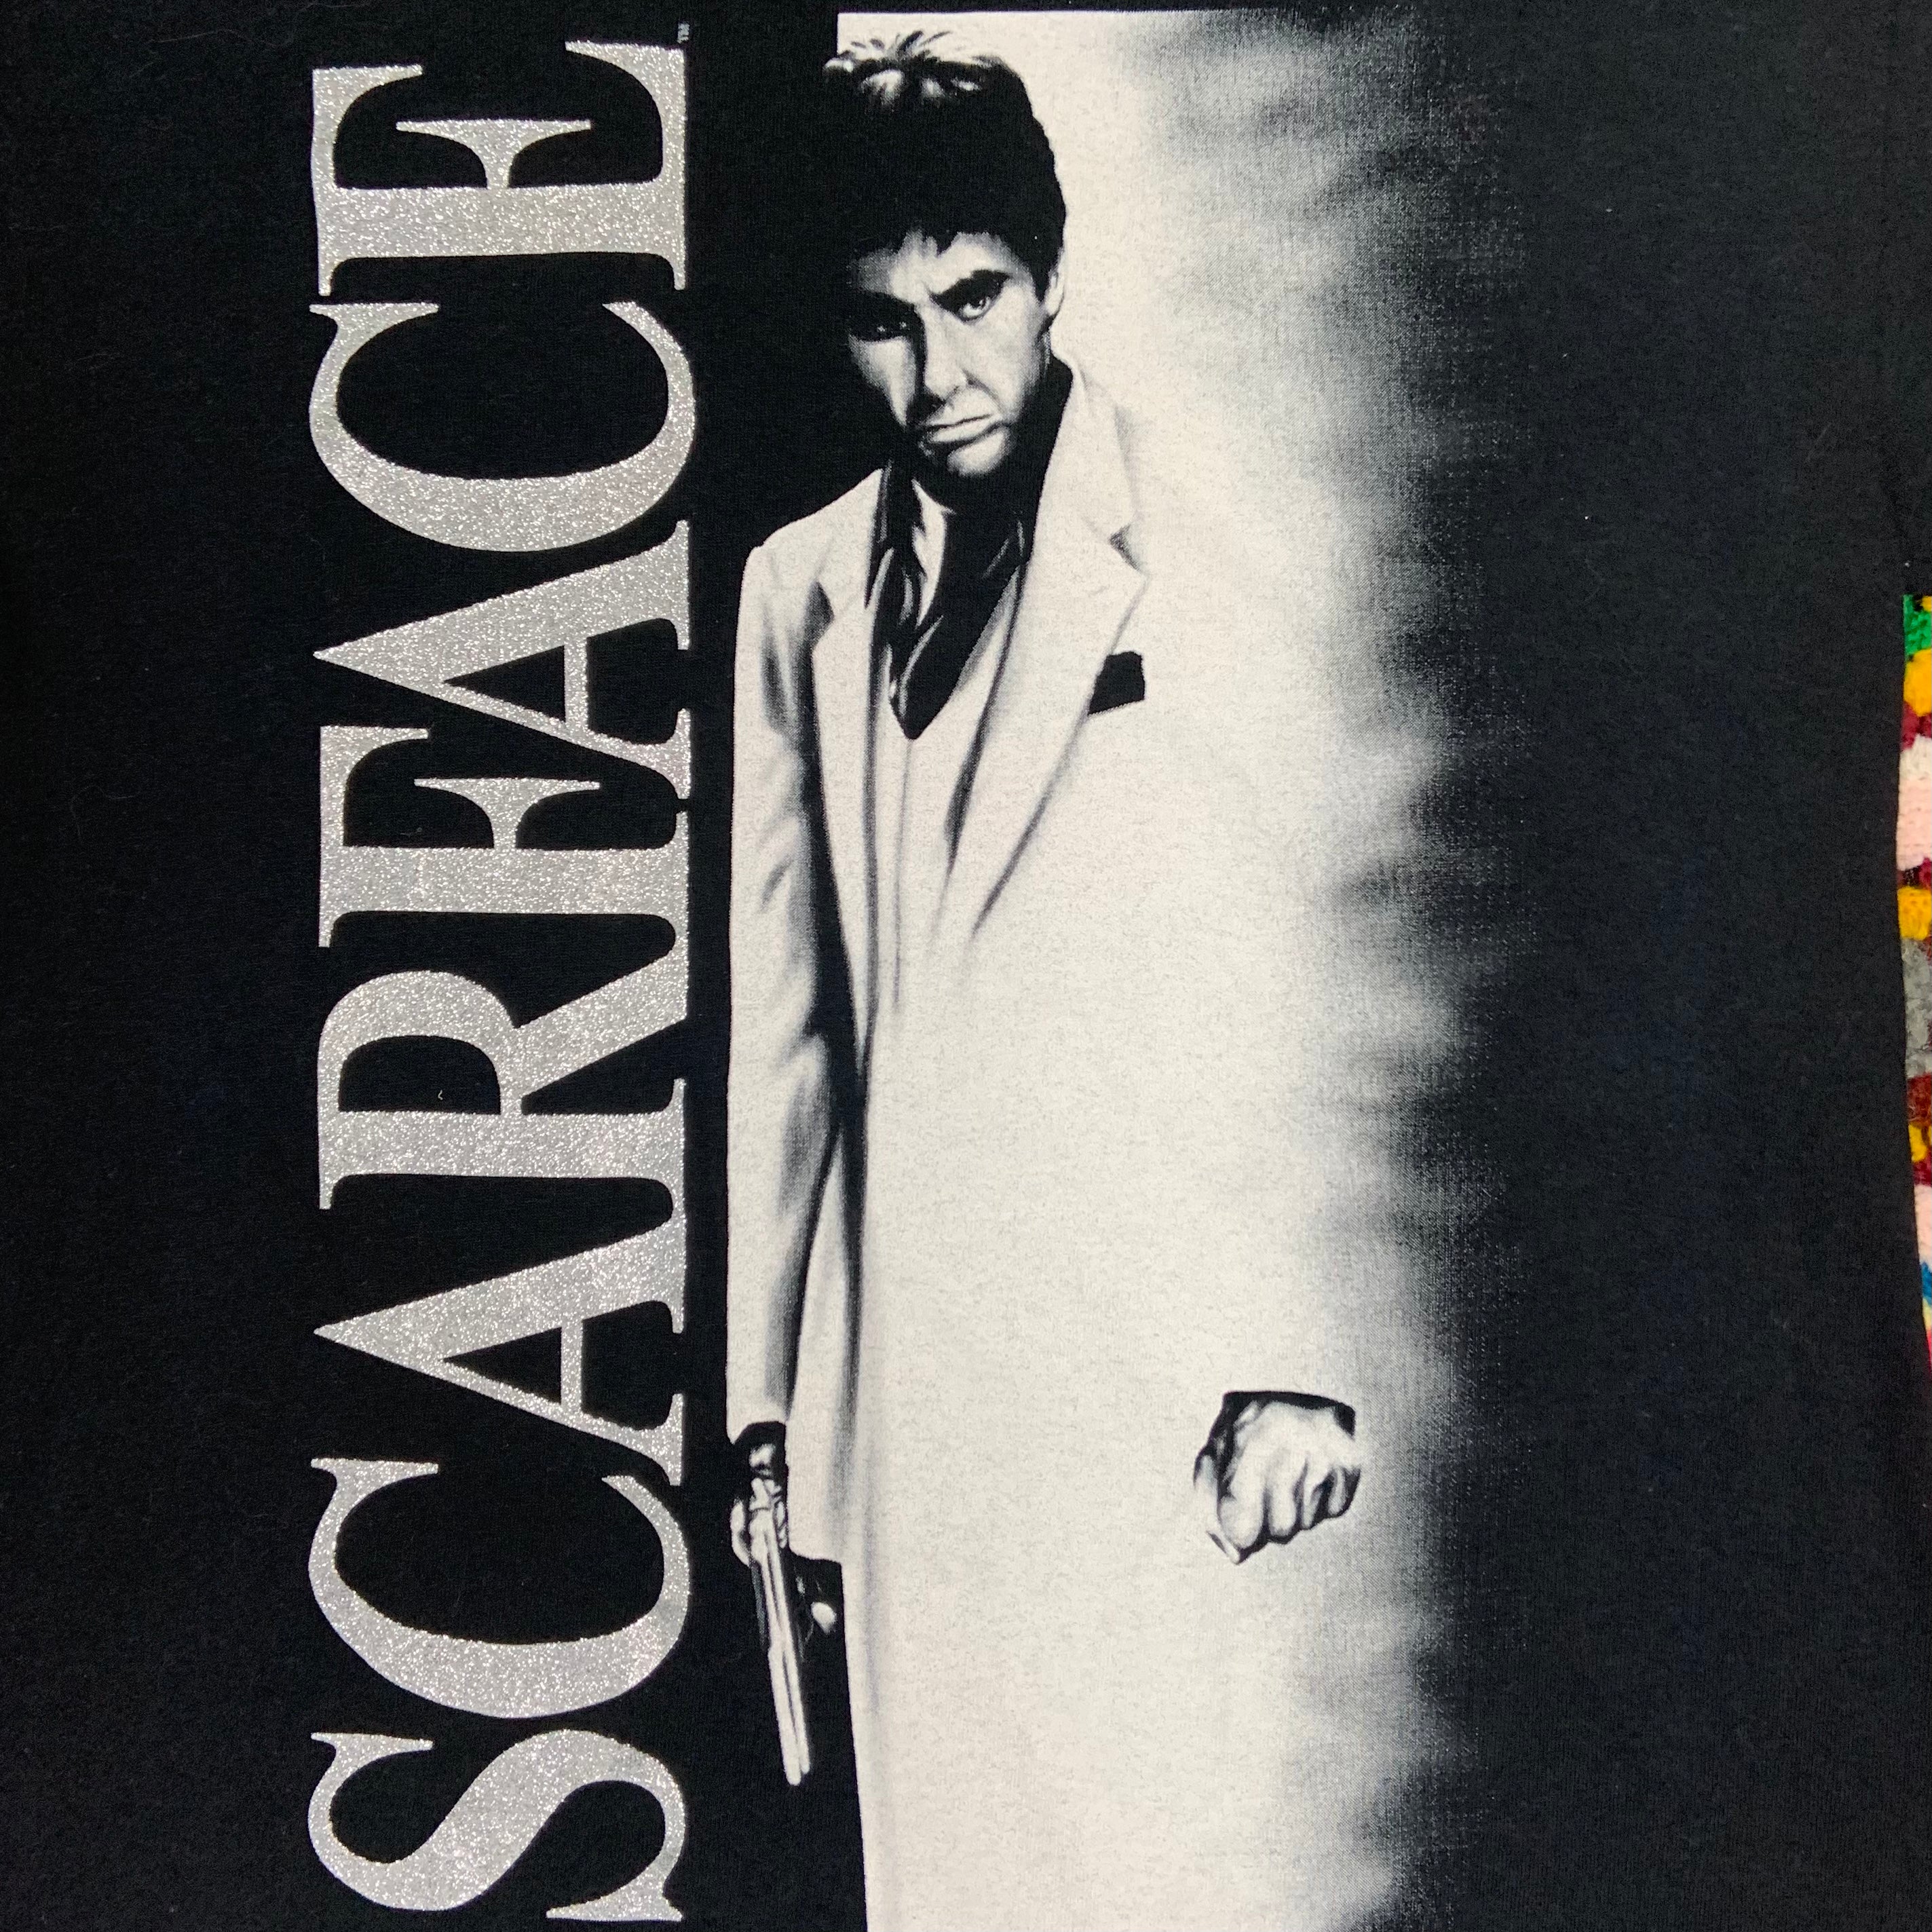 T-Shirt Scarface